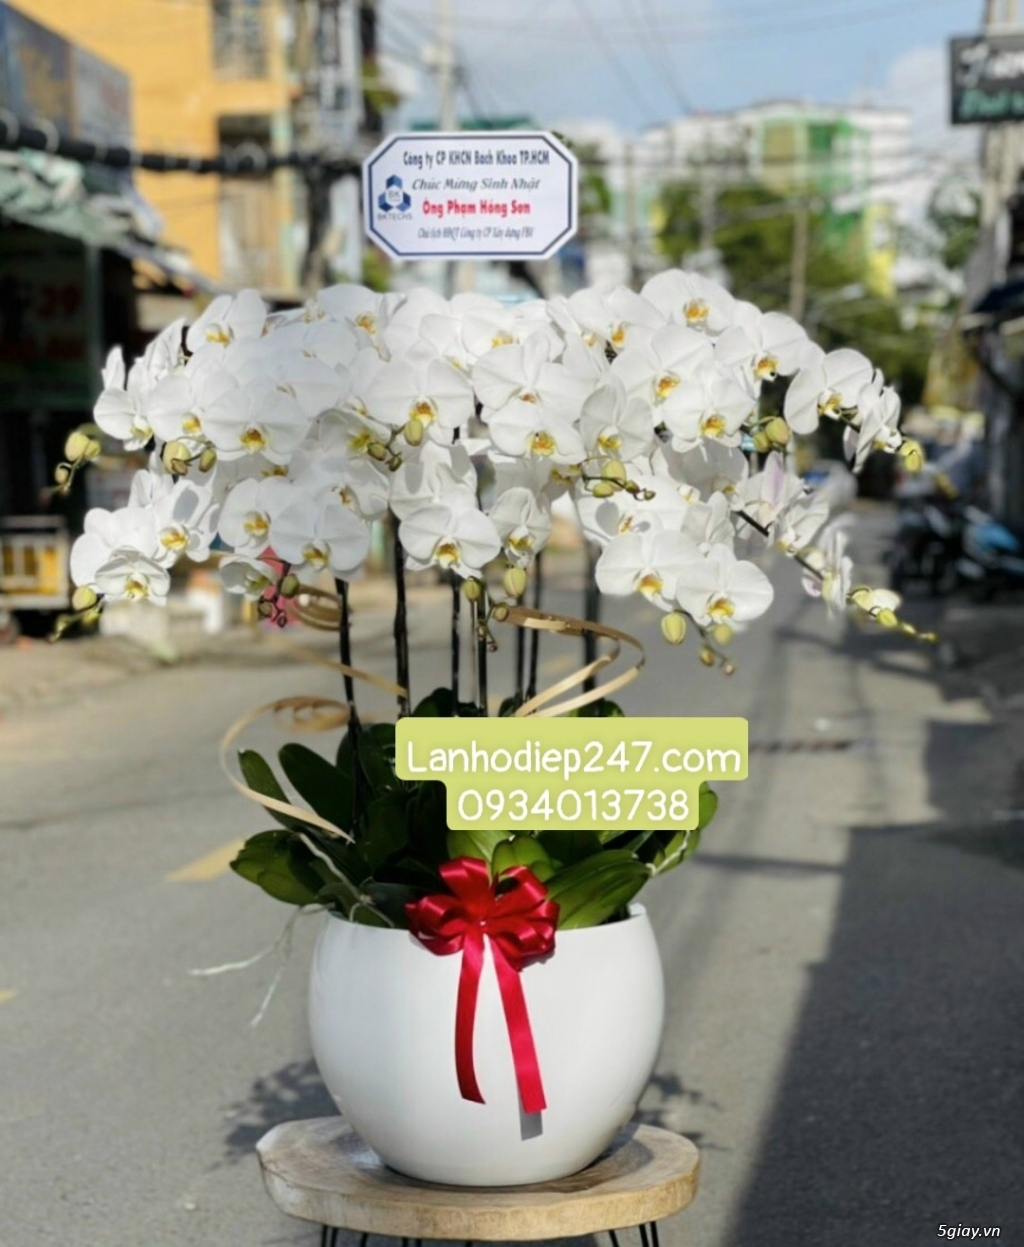 Hoa Tươi 247 Sài Gòn là dịch vụ hoa tươi số 1 TPHCM chuyên Lan Hồ Điệp - 1